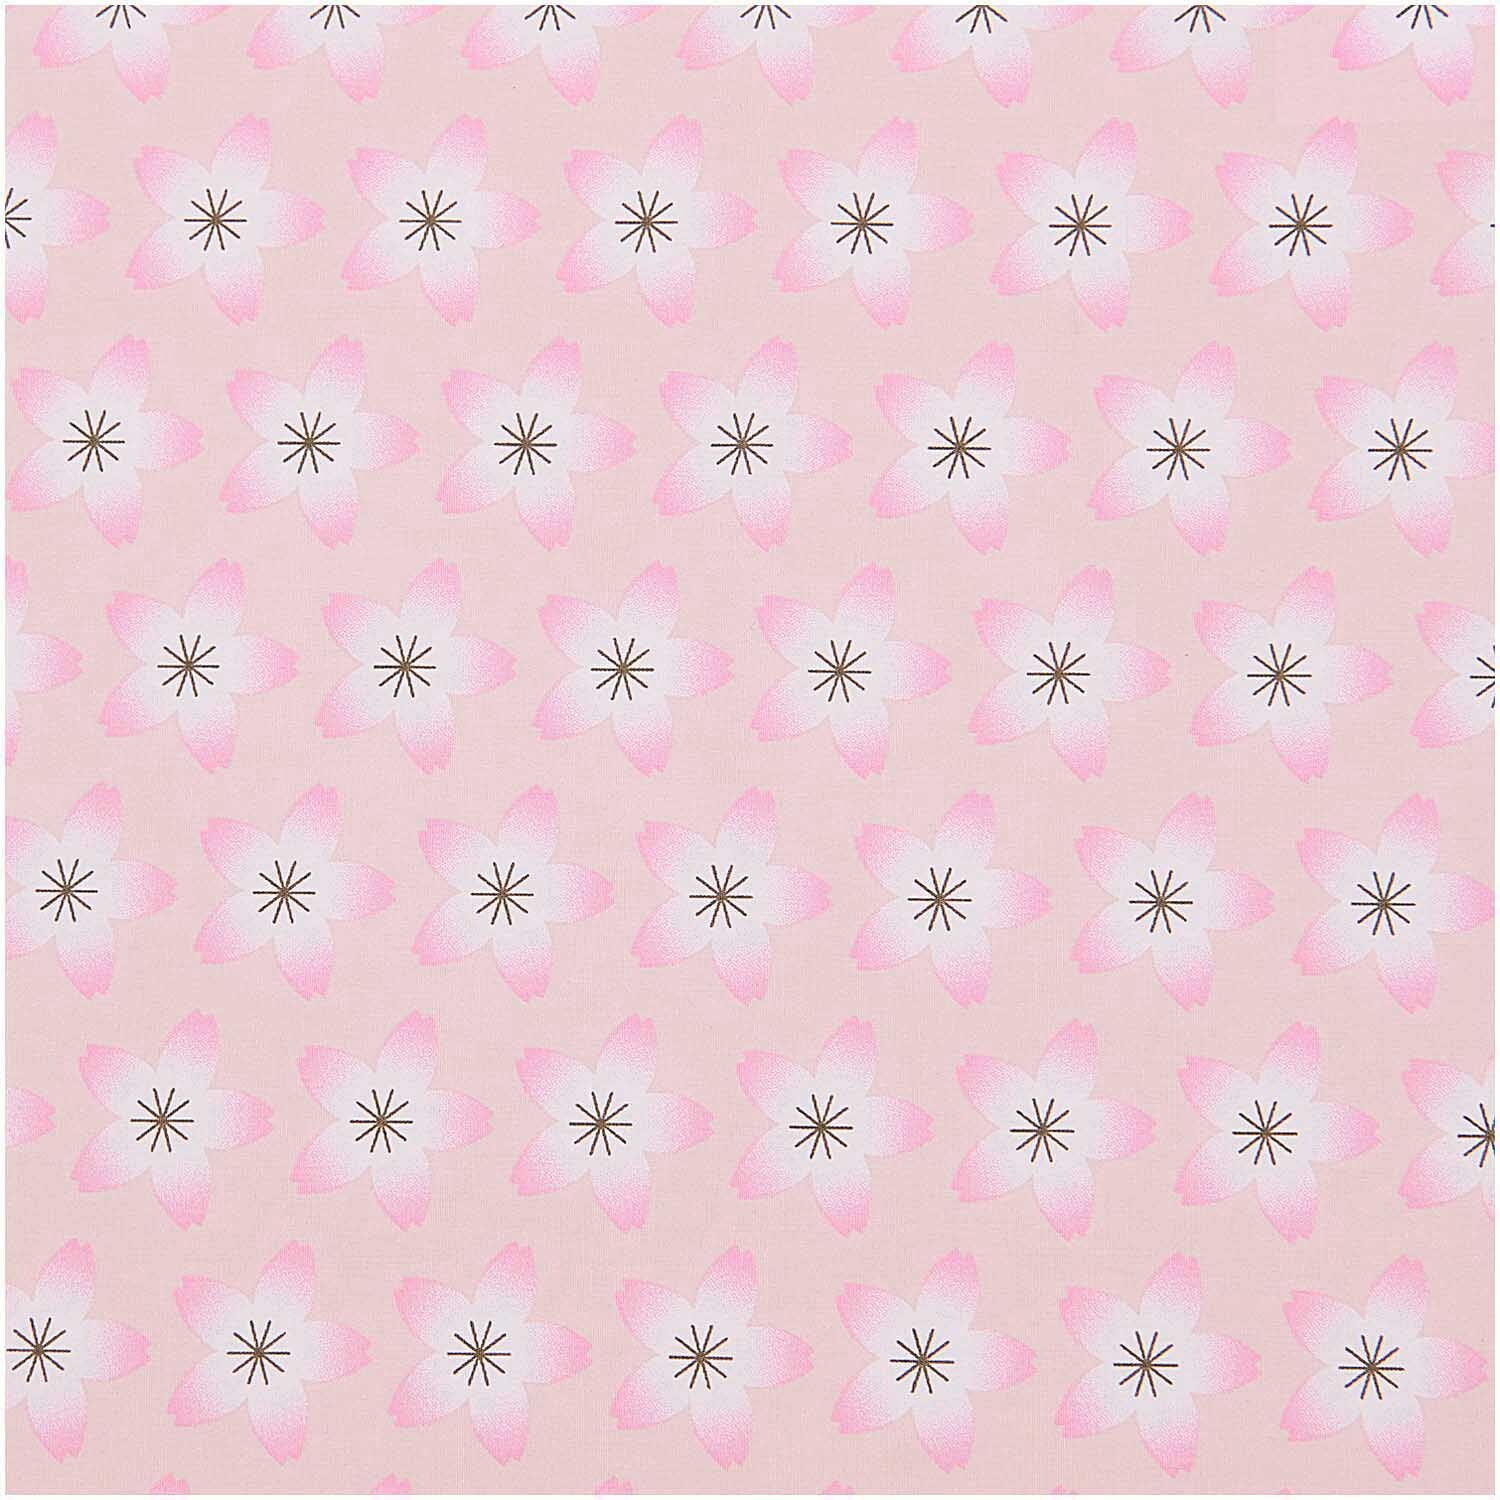 Stoffabschnitt Baumwoll-Popelin rosa Kirschblüten 50x140cm